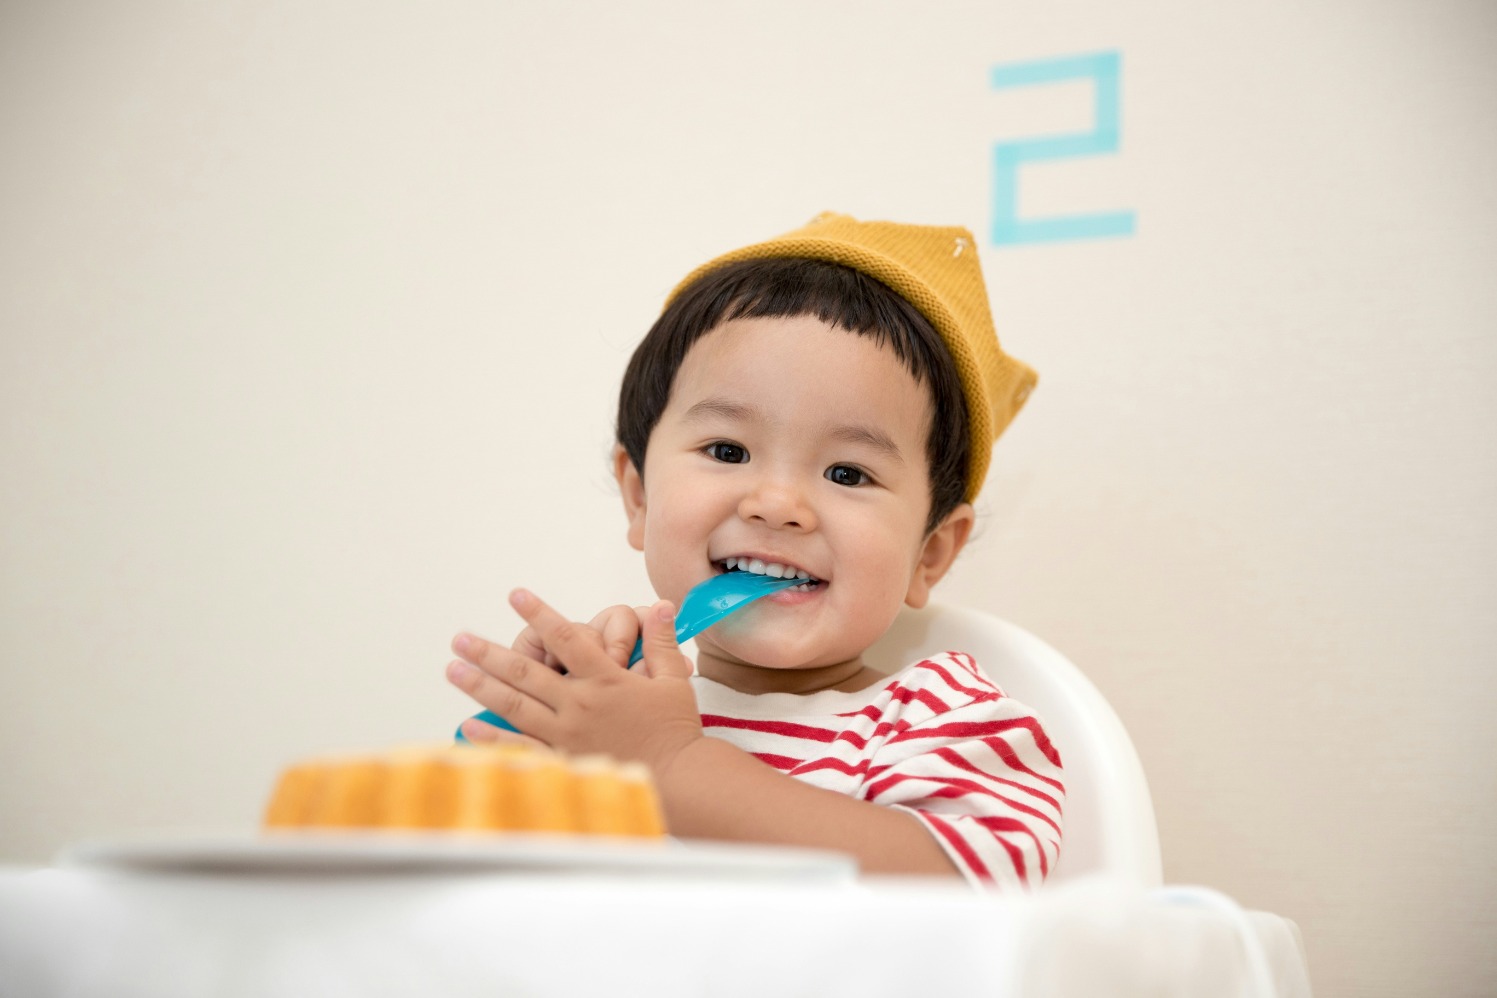 Penting untuk mengajarkan rutin sikat gigi pada anak. (Sumber gambar: Kazuend/Unsplash)